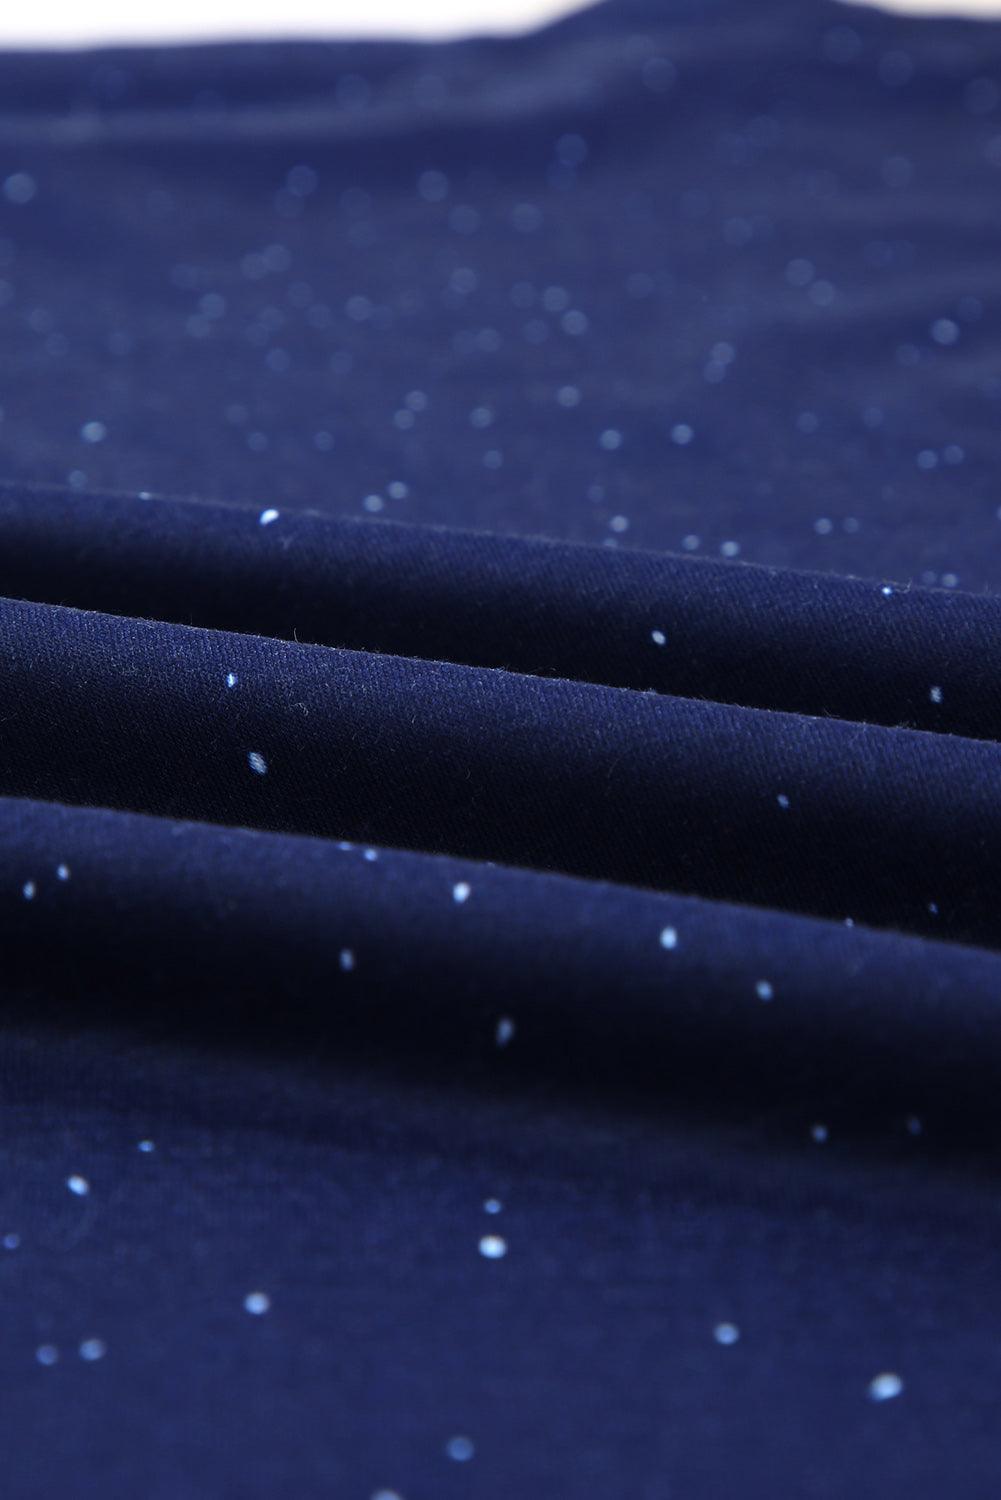 T-shirt bleu marine à manches courtes et col rond teint par nœuds